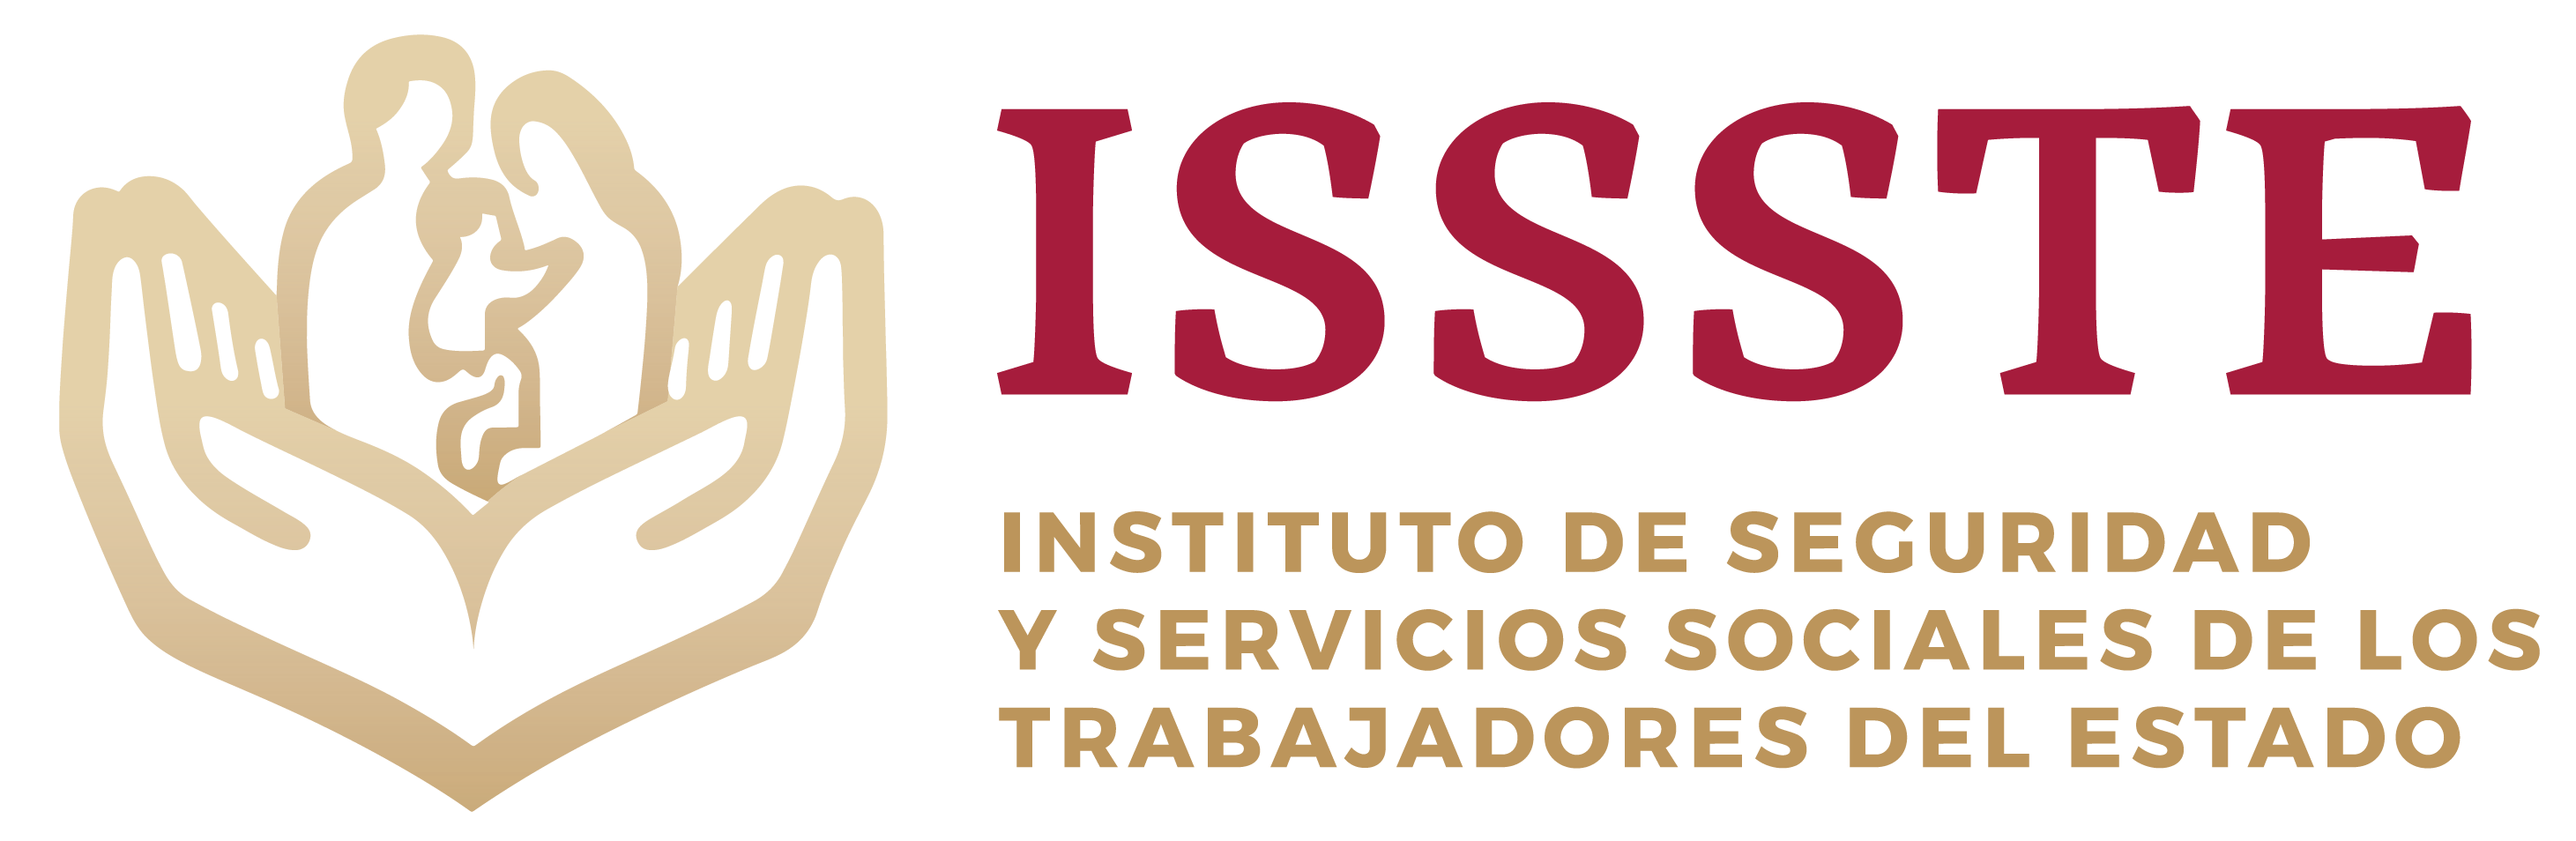 Instituto De Seguridad Y Servicios Sociales De Los Trabajadores Del Estado Noticias Dna3 5308